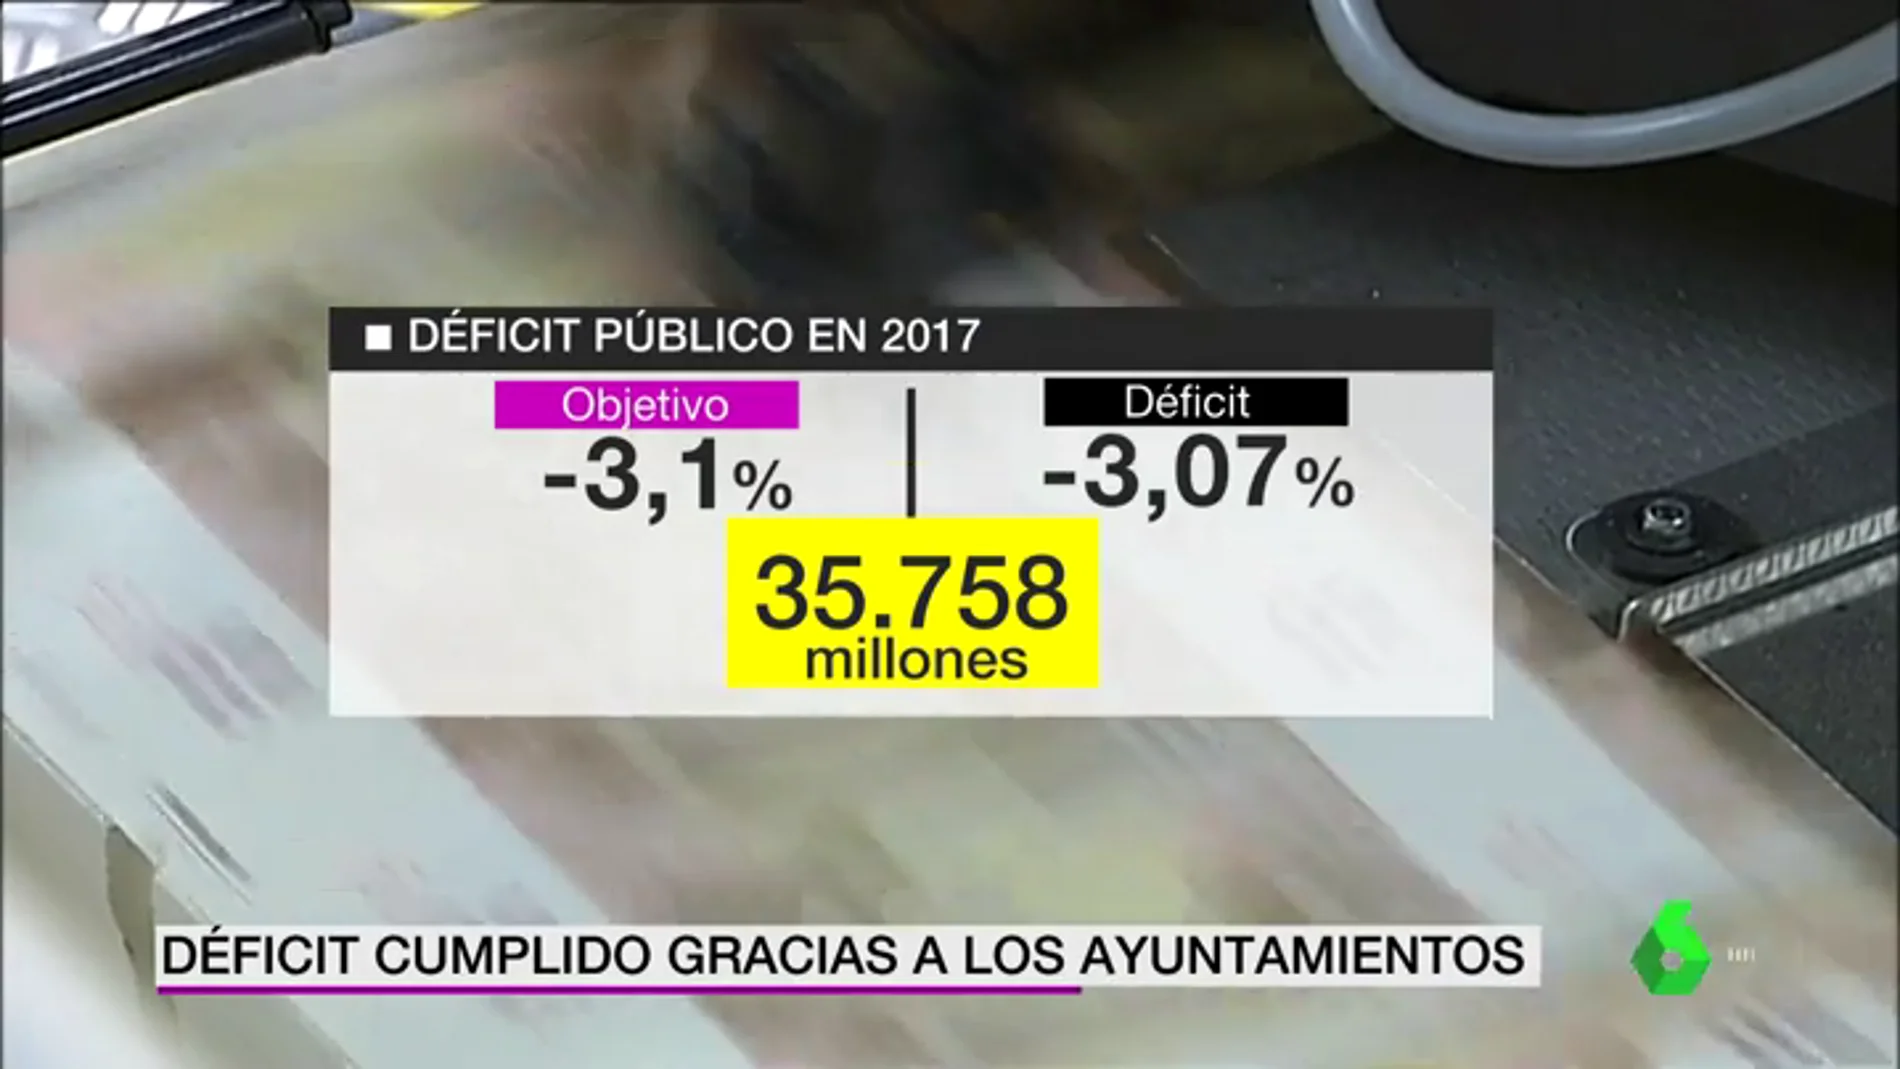 El Gobierno de Rajoy cumple por primera vez con el objetivo de déficit gracias a los Ayuntamientos